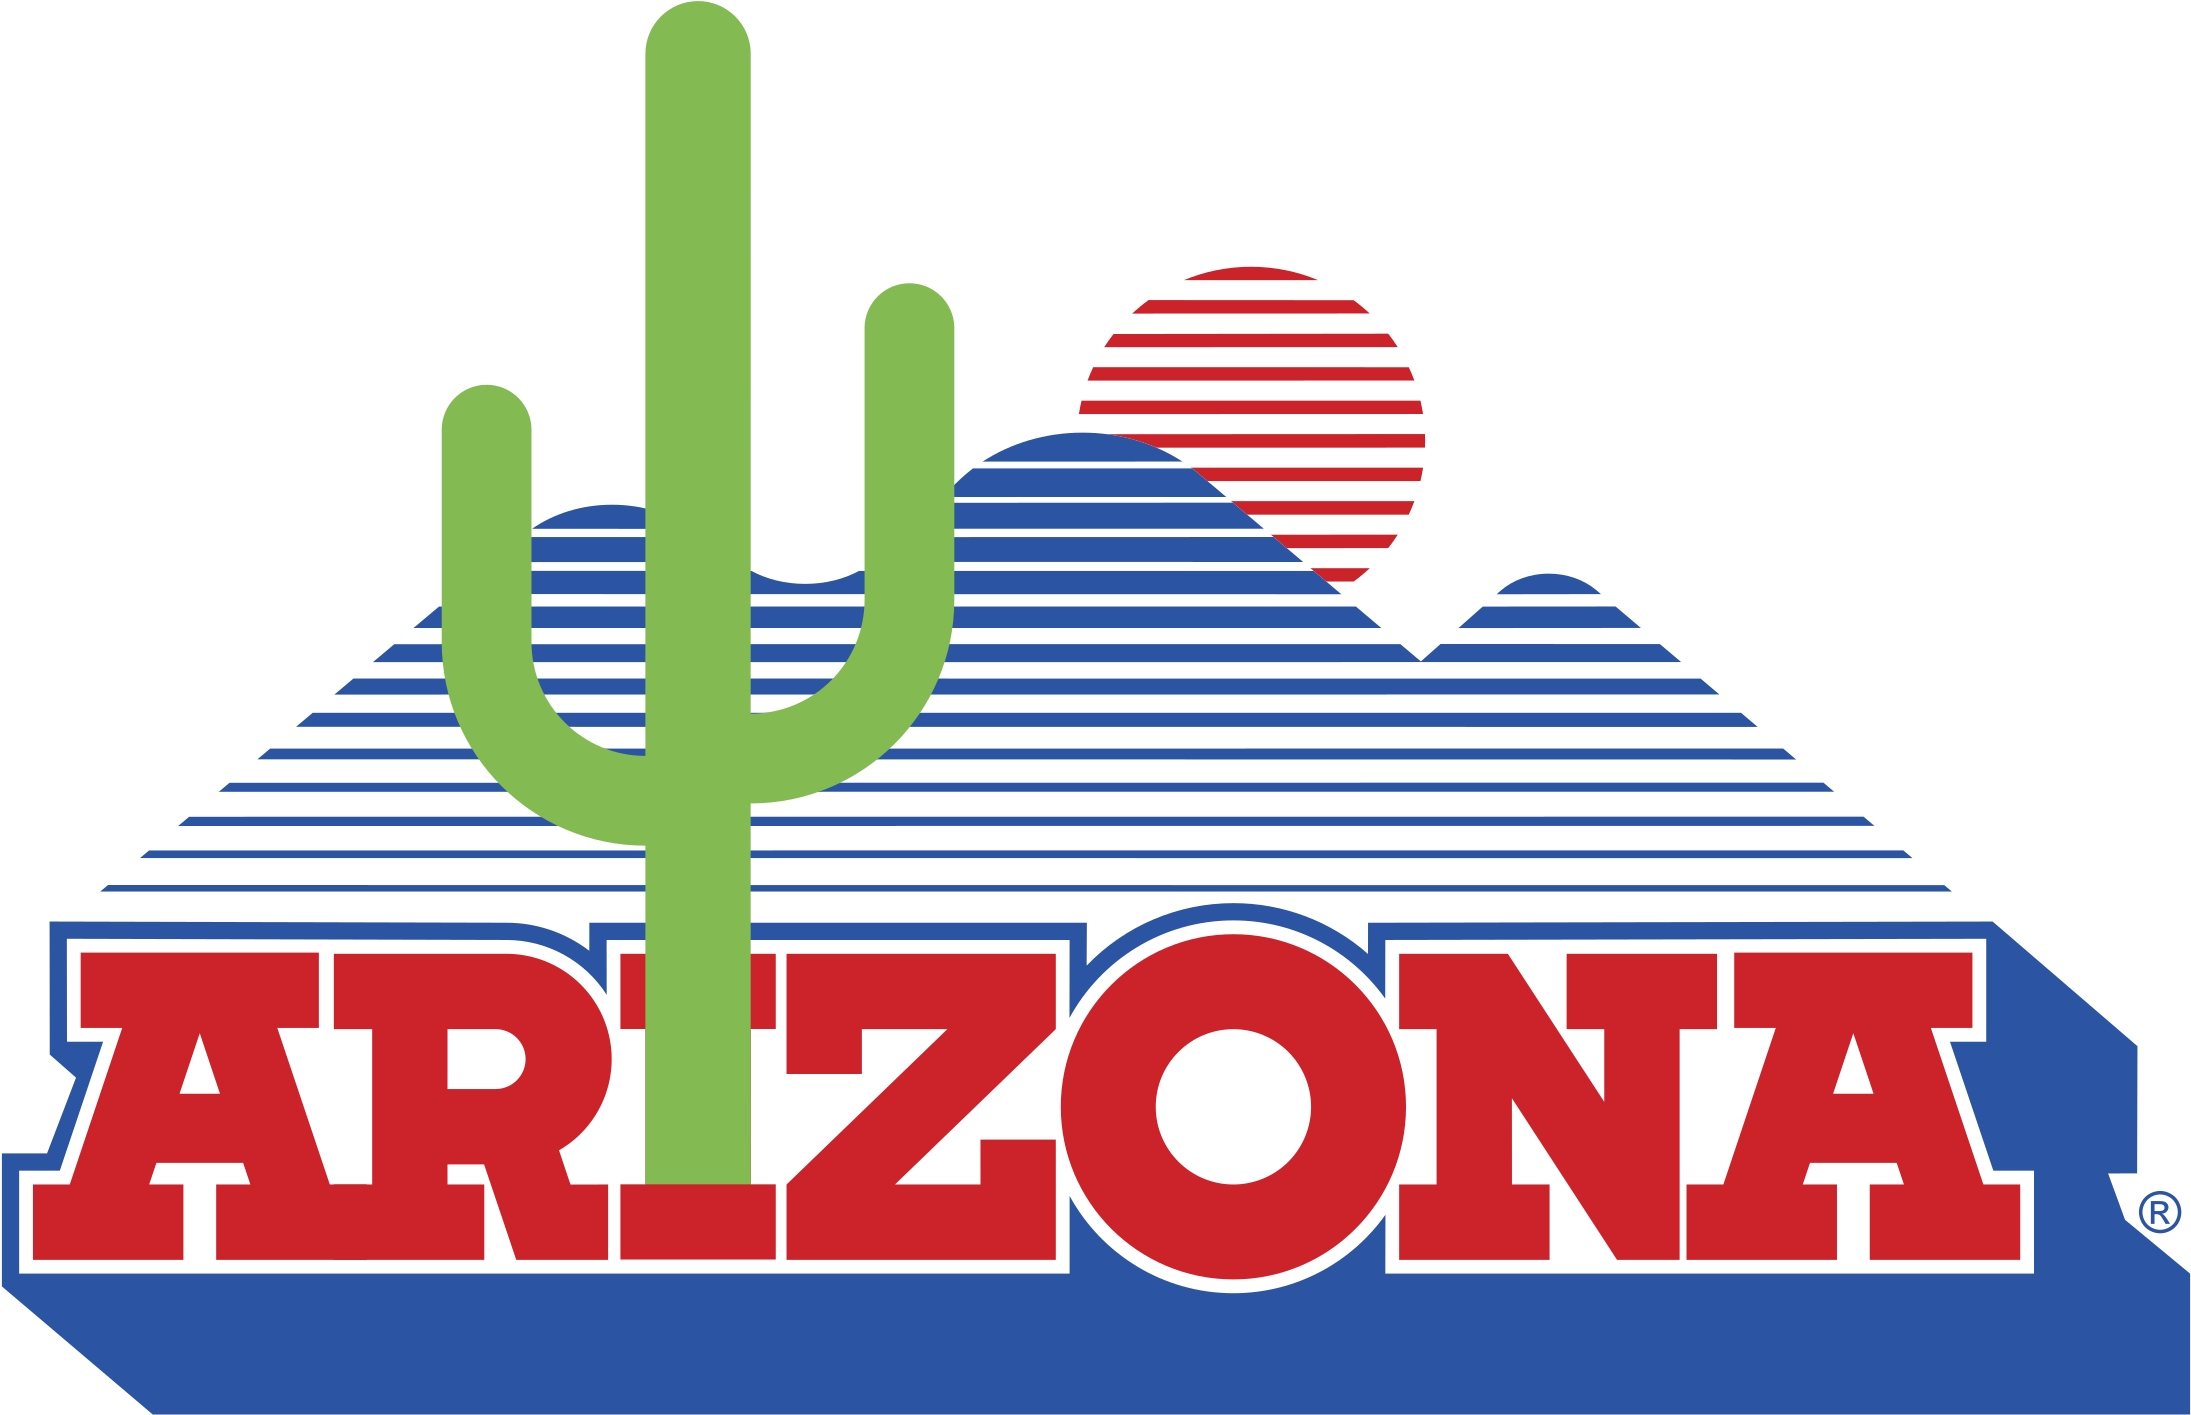 2400 X 2400 4 - Arizona Wildcats Logo (2400x2400)